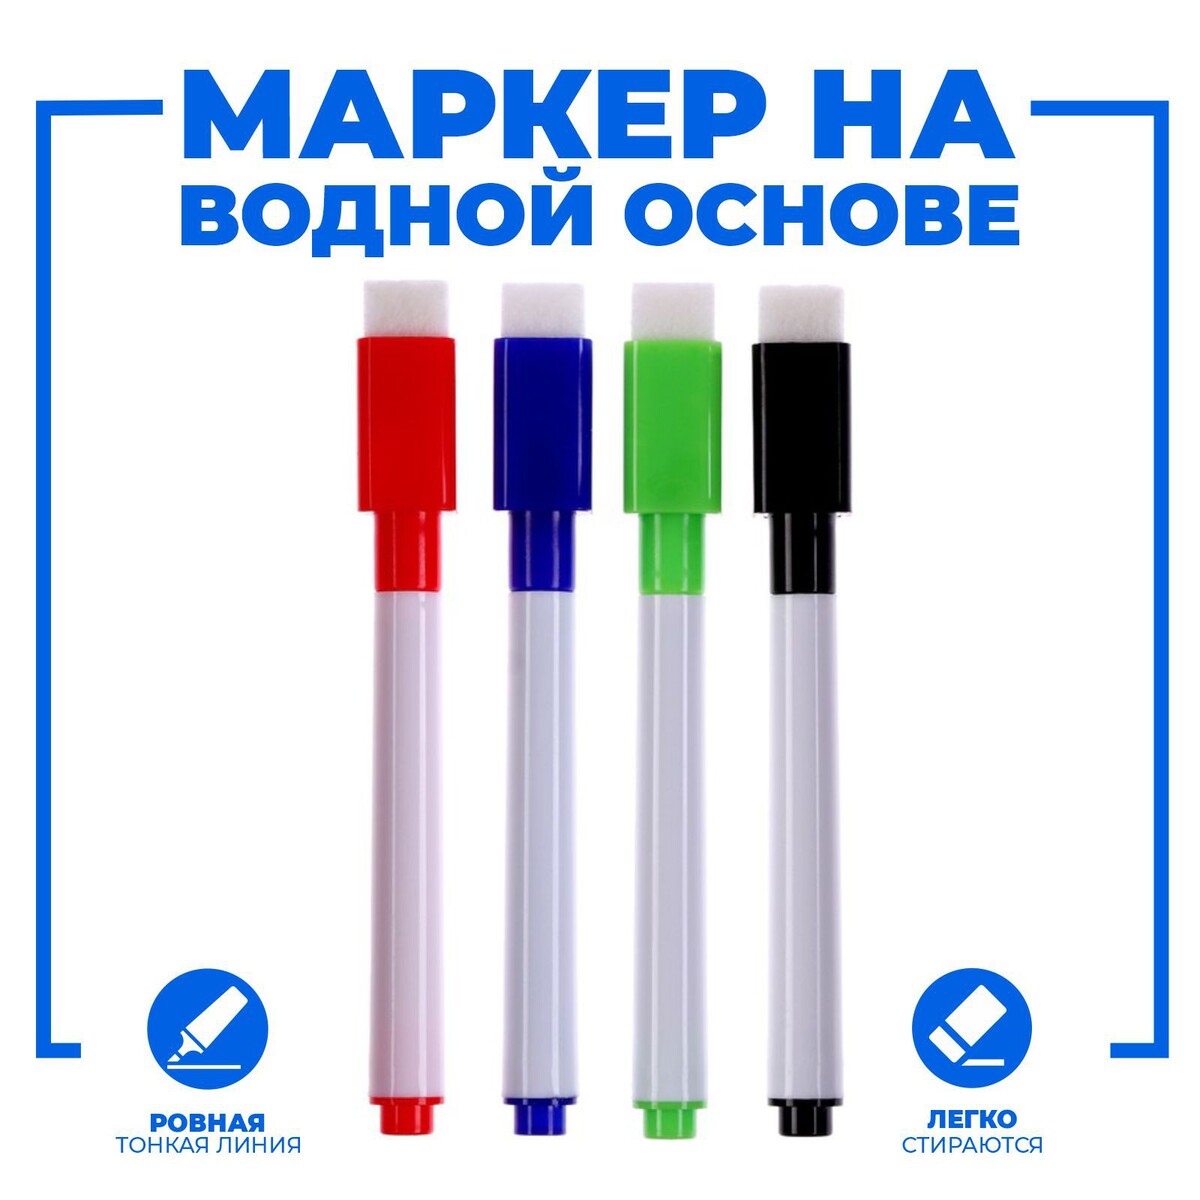 Маркер цветной на водной основе с губкой, набор 4 шт маркеры для белой доски luxor 8 штук